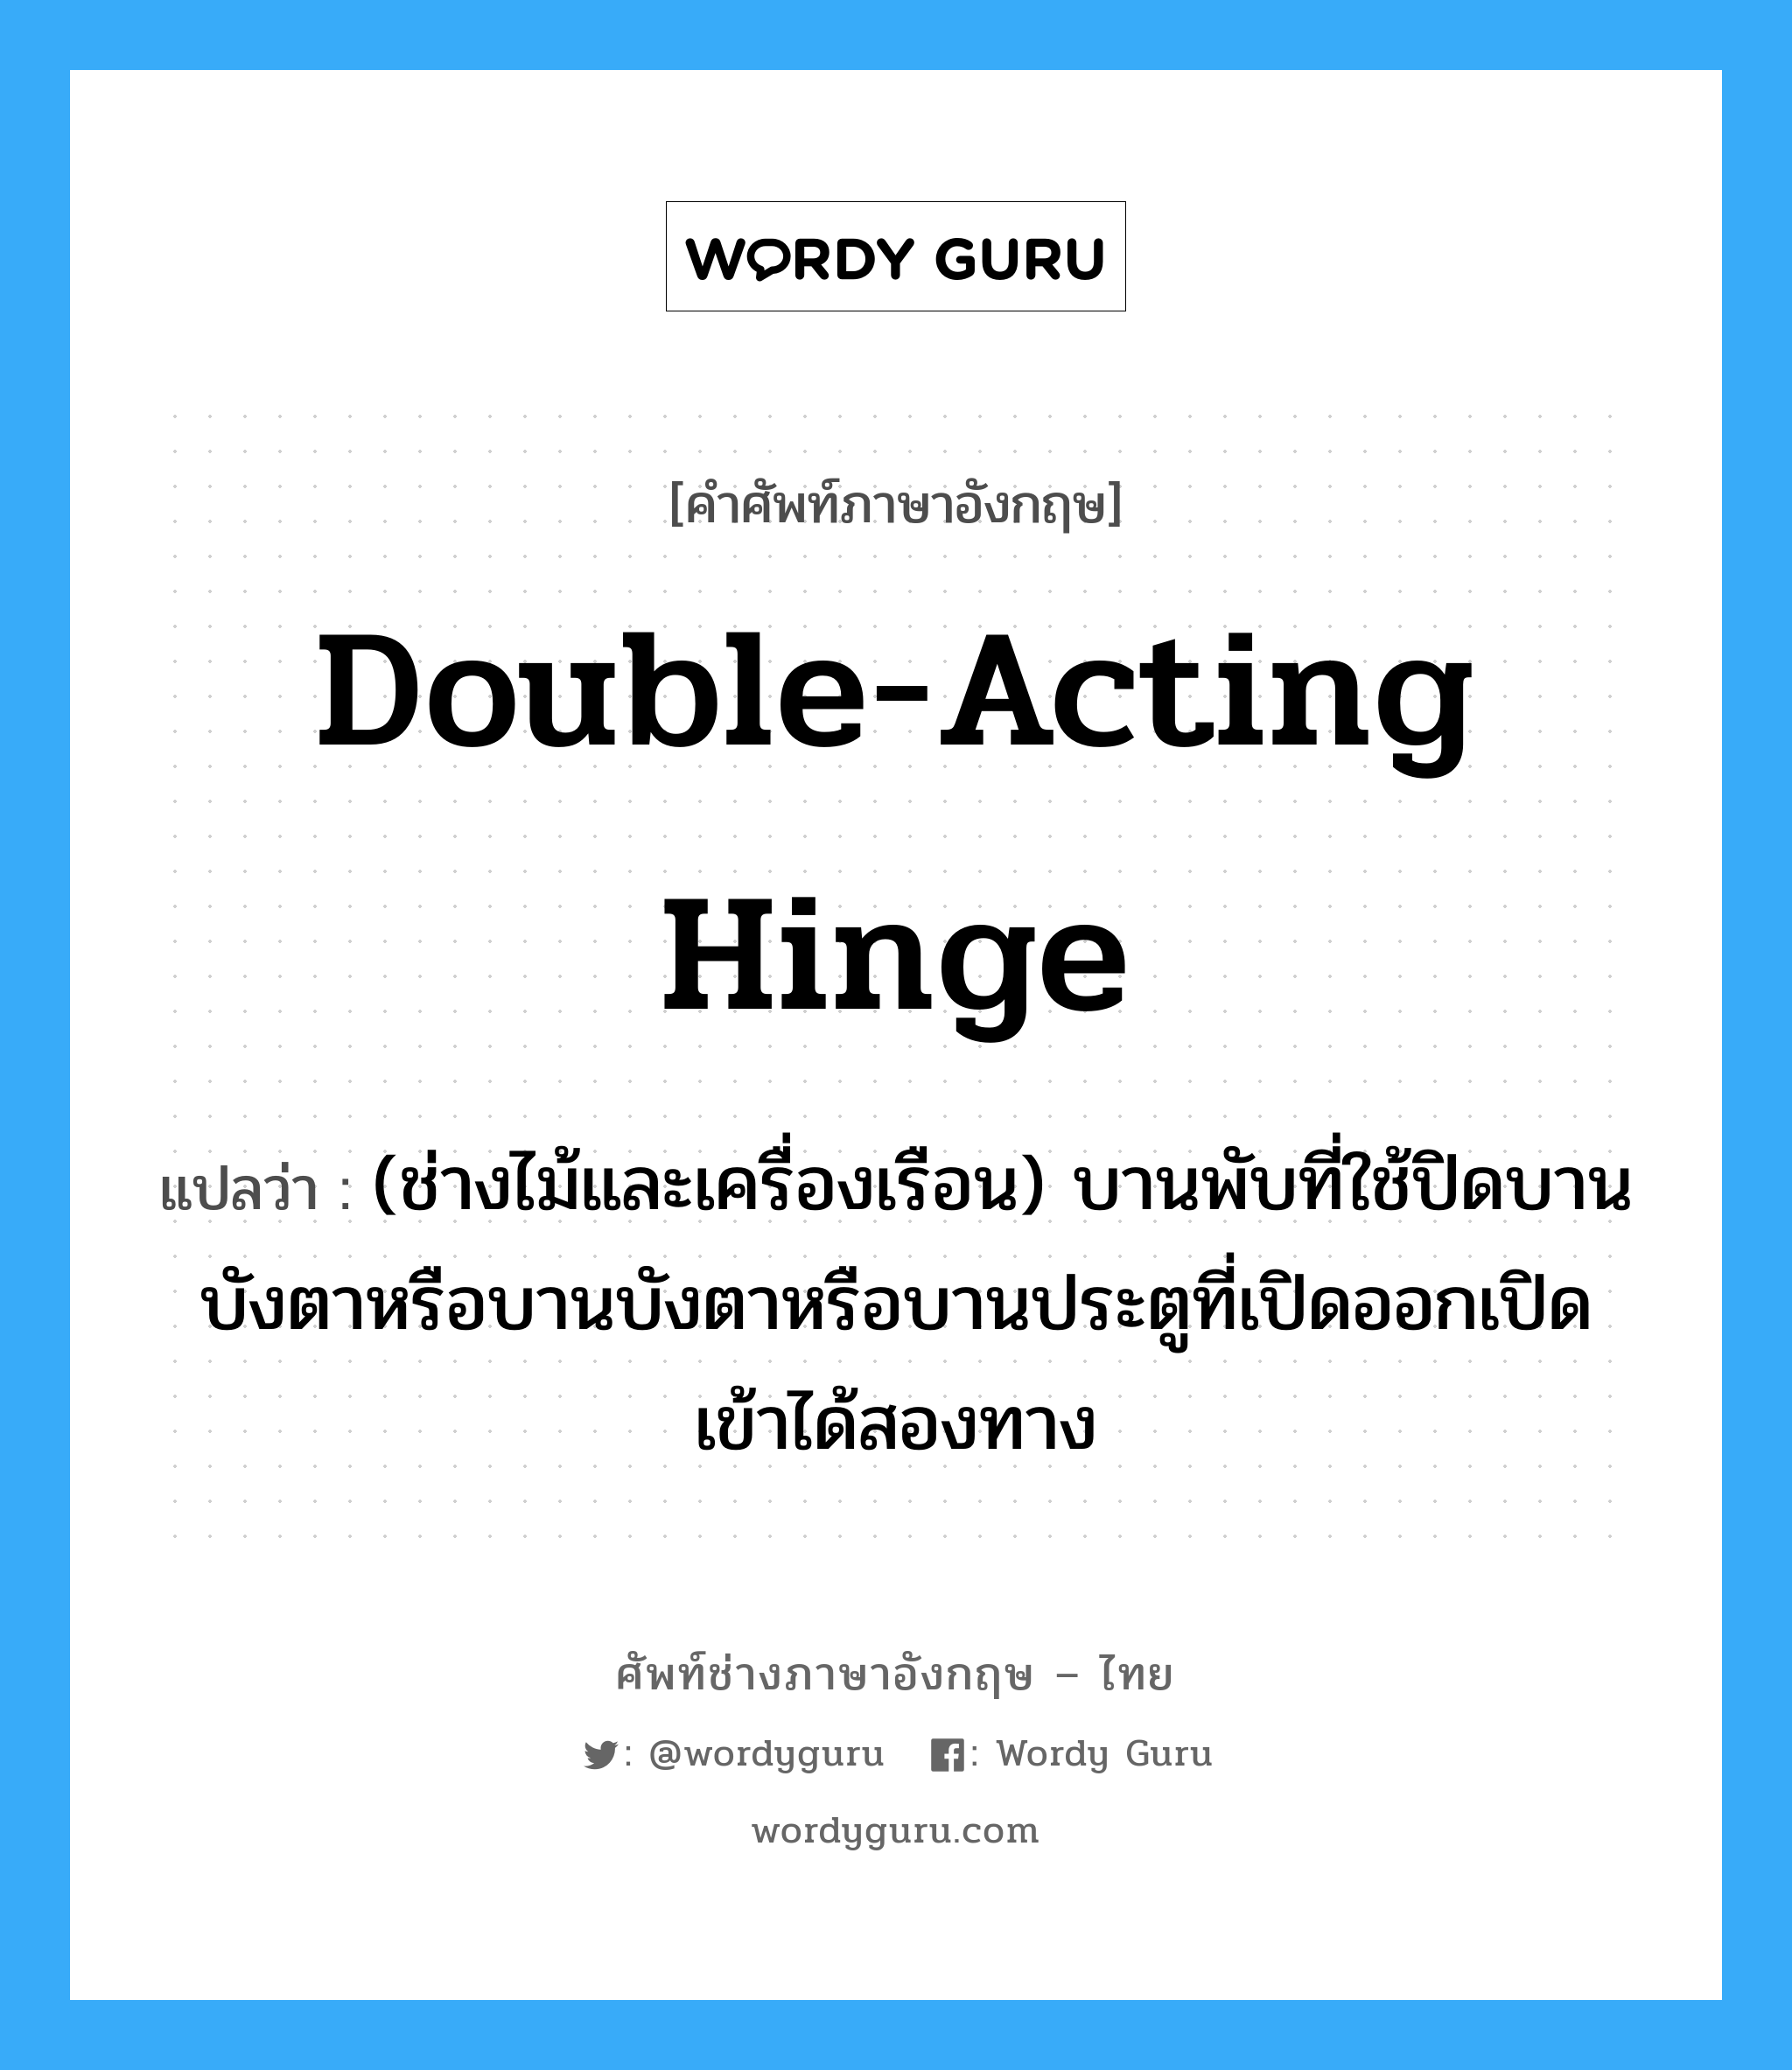 double acting hinge แปลว่า?, คำศัพท์ช่างภาษาอังกฤษ - ไทย double-acting hinge คำศัพท์ภาษาอังกฤษ double-acting hinge แปลว่า (ช่างไม้และเครื่องเรือน) บานพับที่ใช้ปิดบานบังตาหรือบานบังตาหรือบานประตูที่เปิดออกเปิดเข้าได้สองทาง